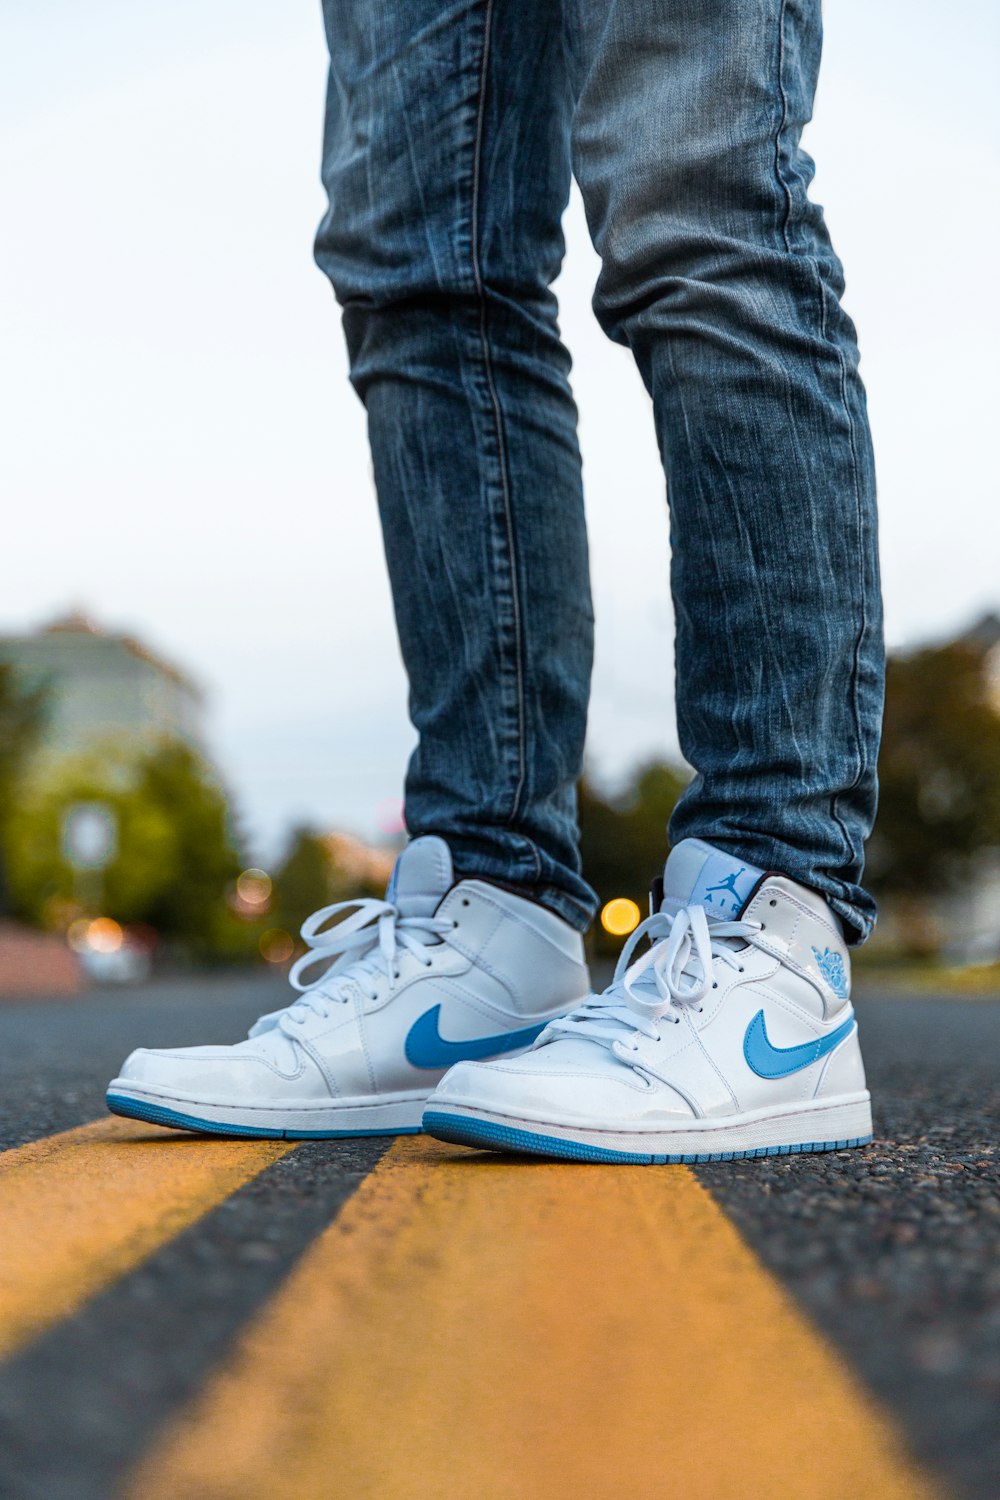 selektive Fokusfotografie einer Person, die blau-weiße Nike Air Jordan 1 trägt